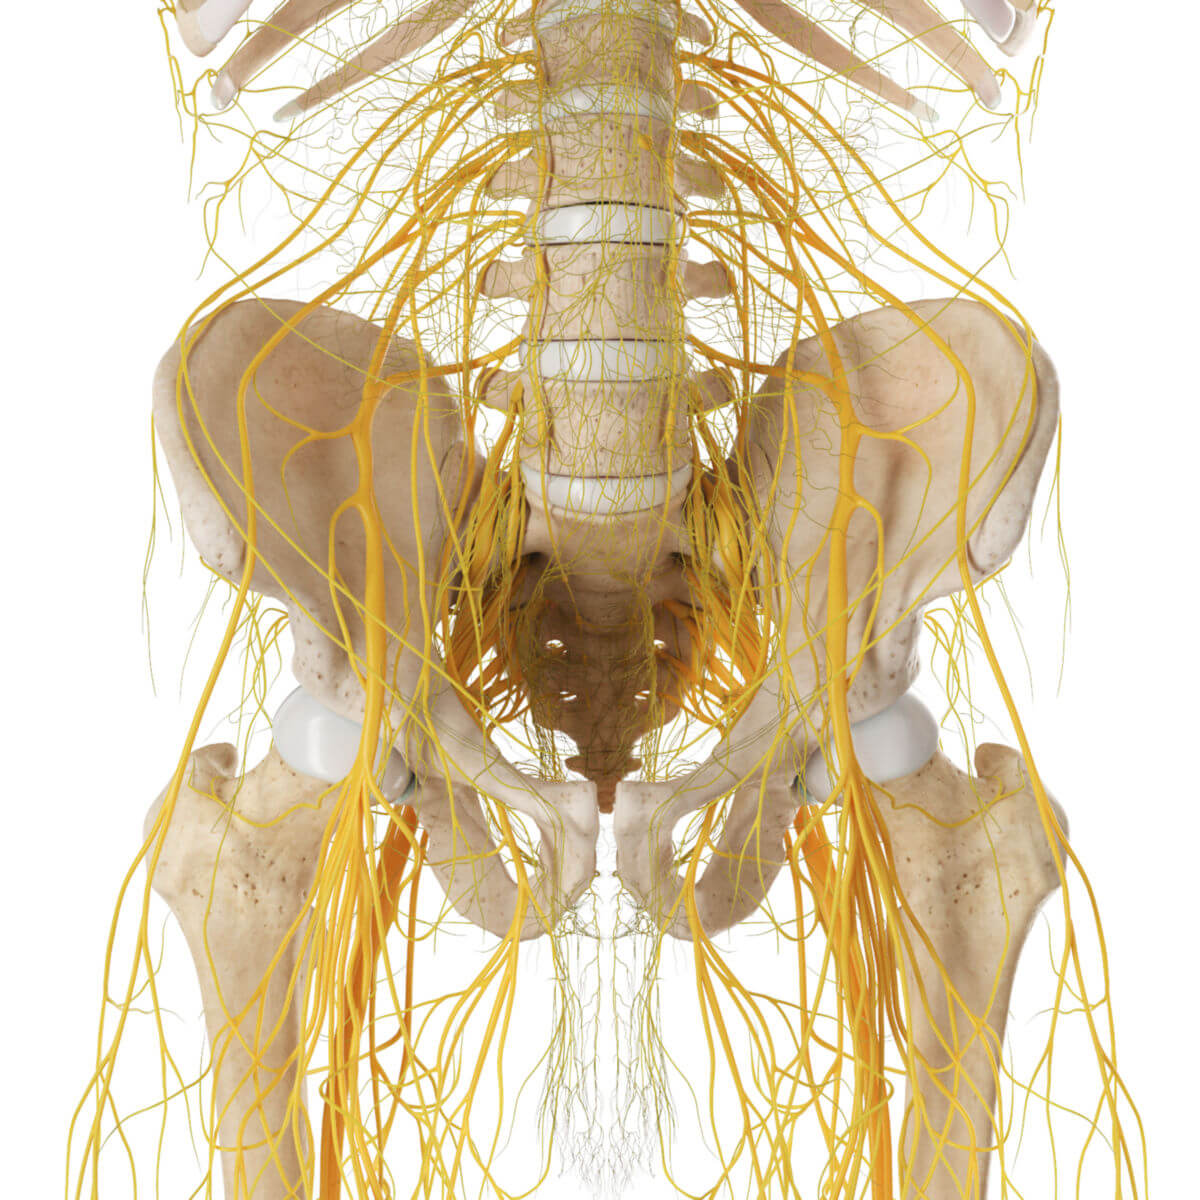 Nervenverläufe der Beckenregion (von ventral)